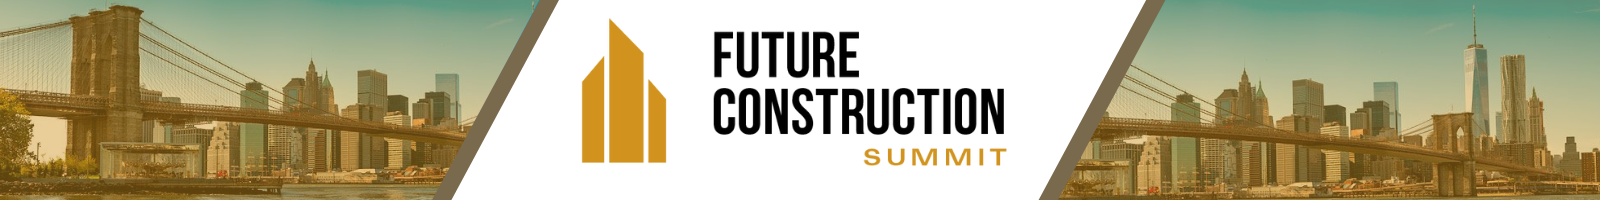 Future Construction Summit